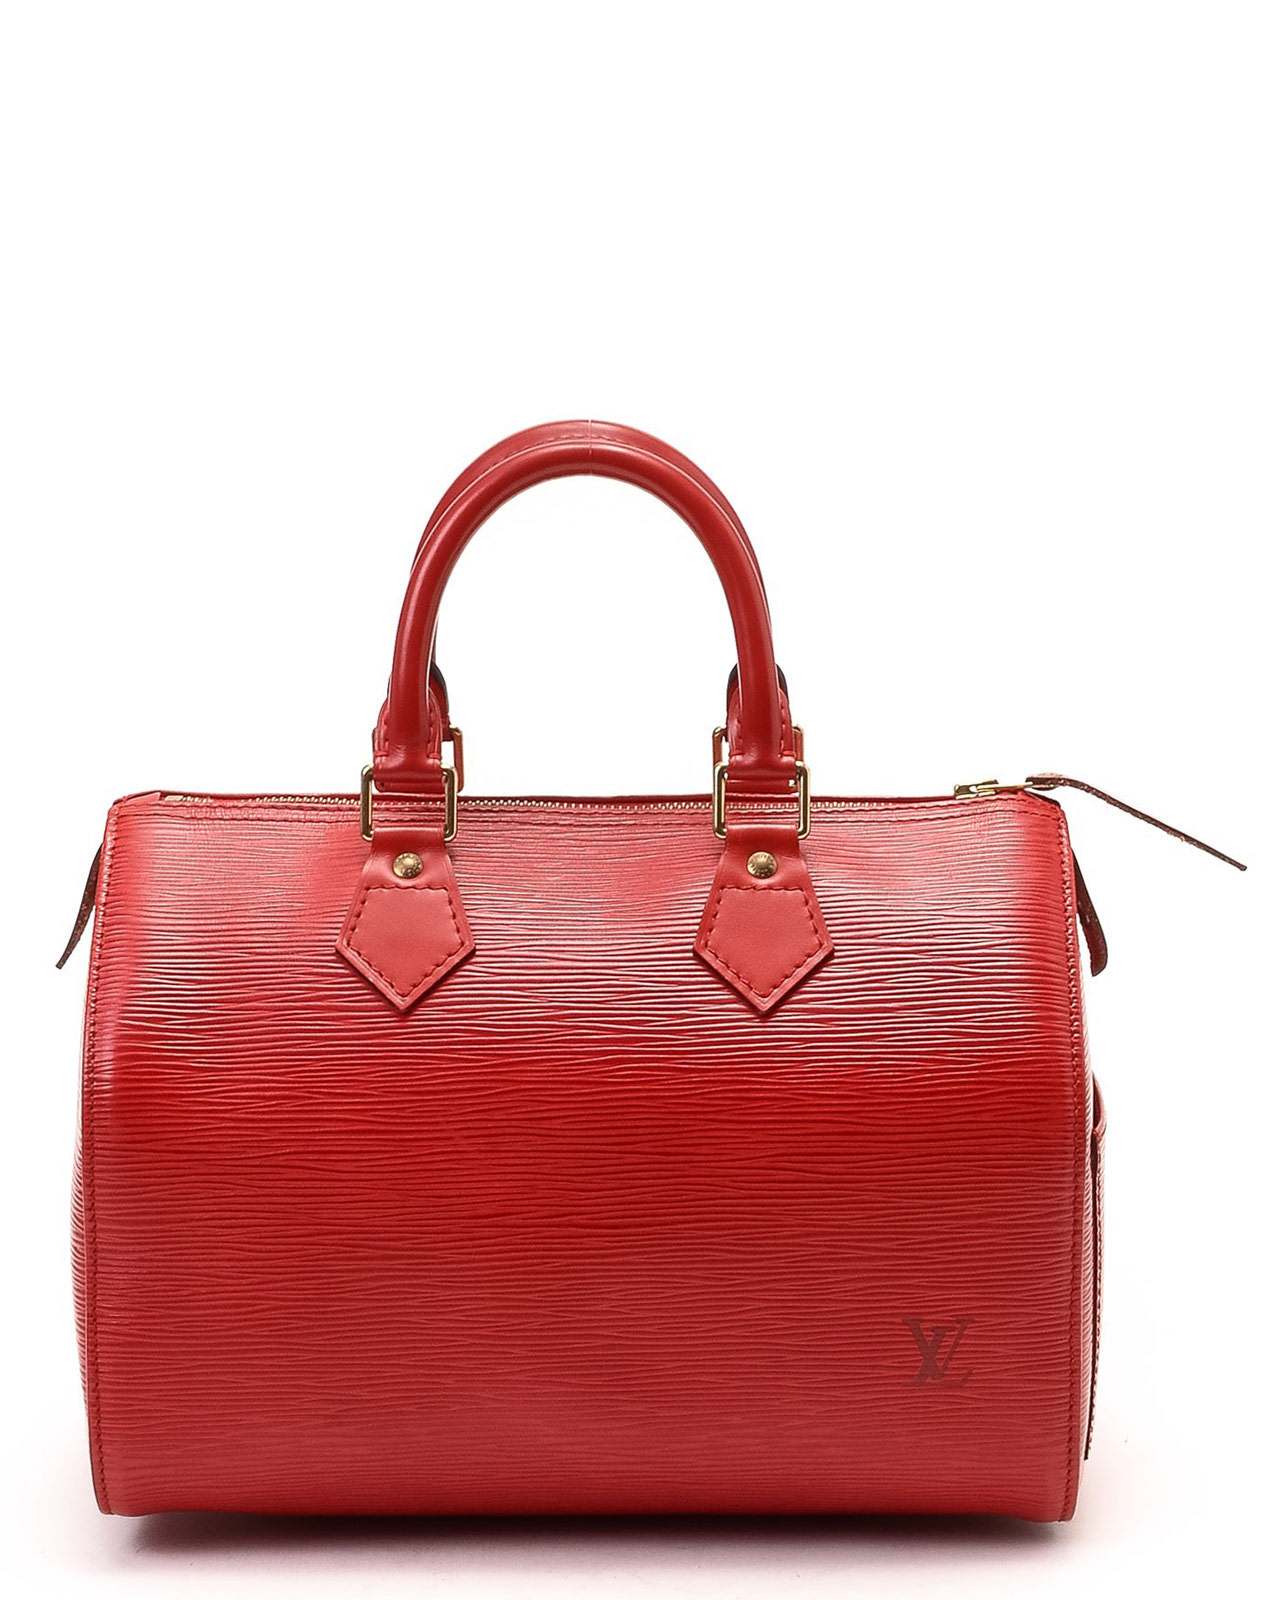 Louis Vuitton Red Speedy 25 Handbag - Lyst